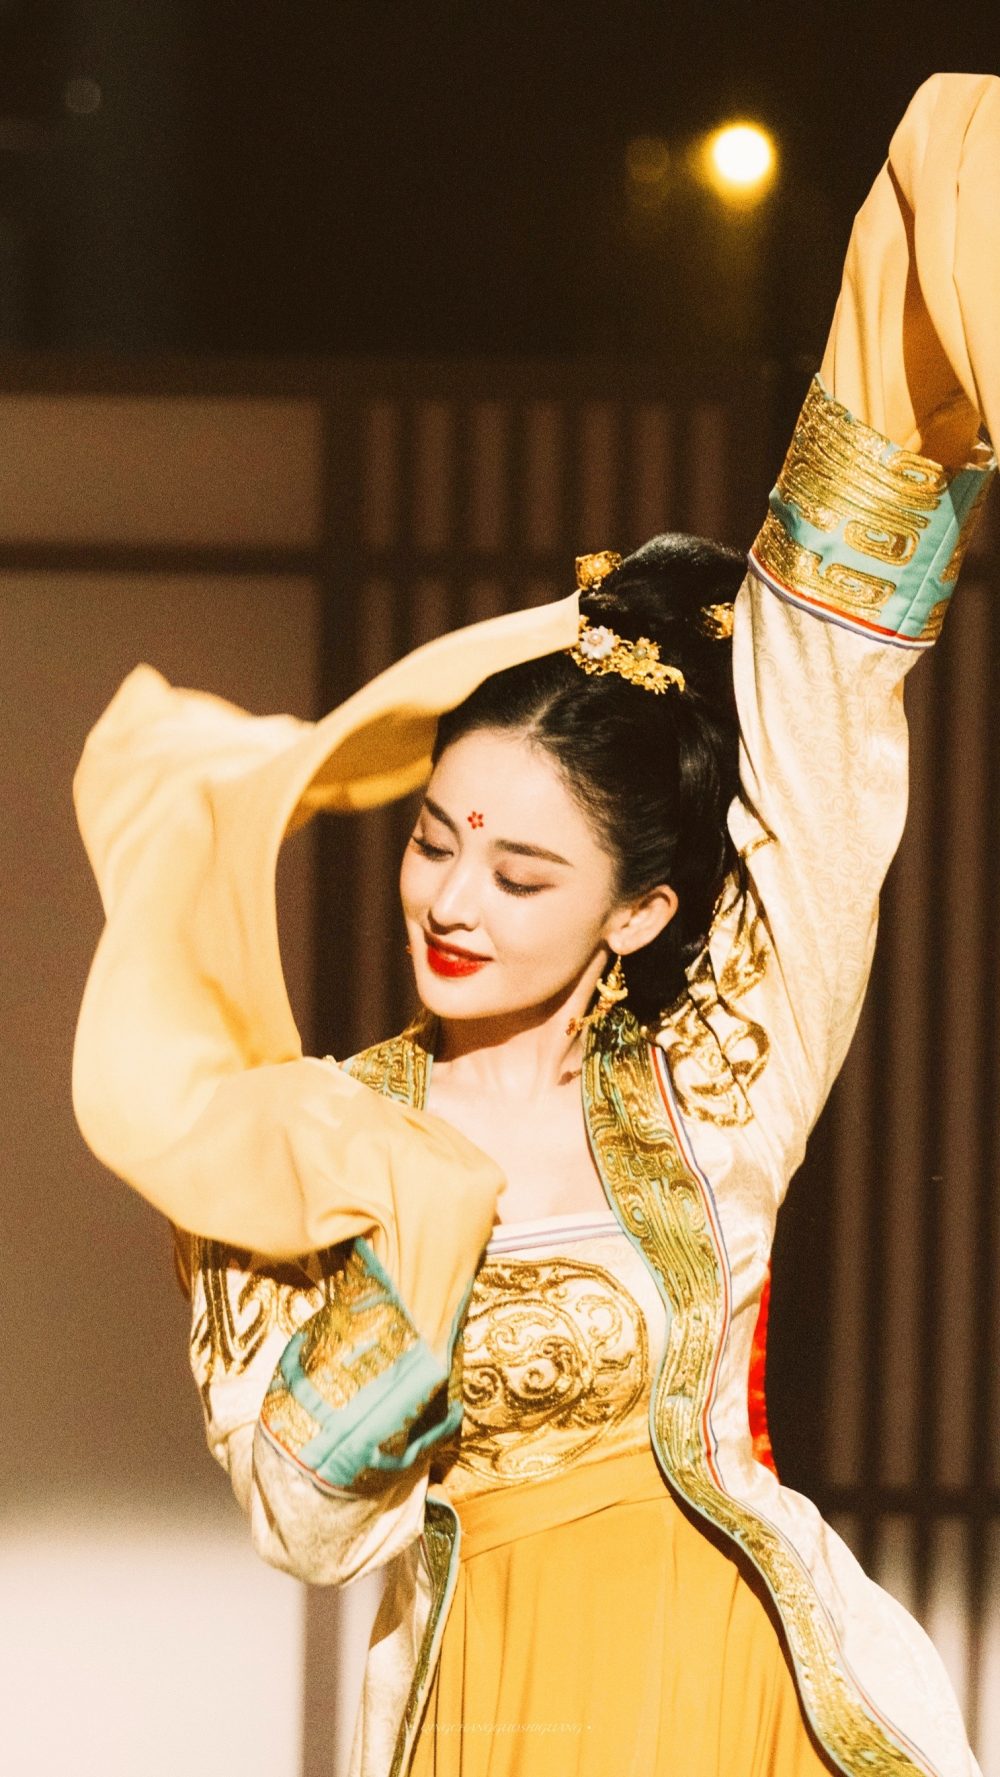 Cổ Lực Na Trát có phần biểu diễn tại chương trình Đêm hội Douyin của đài Hồ Nam.